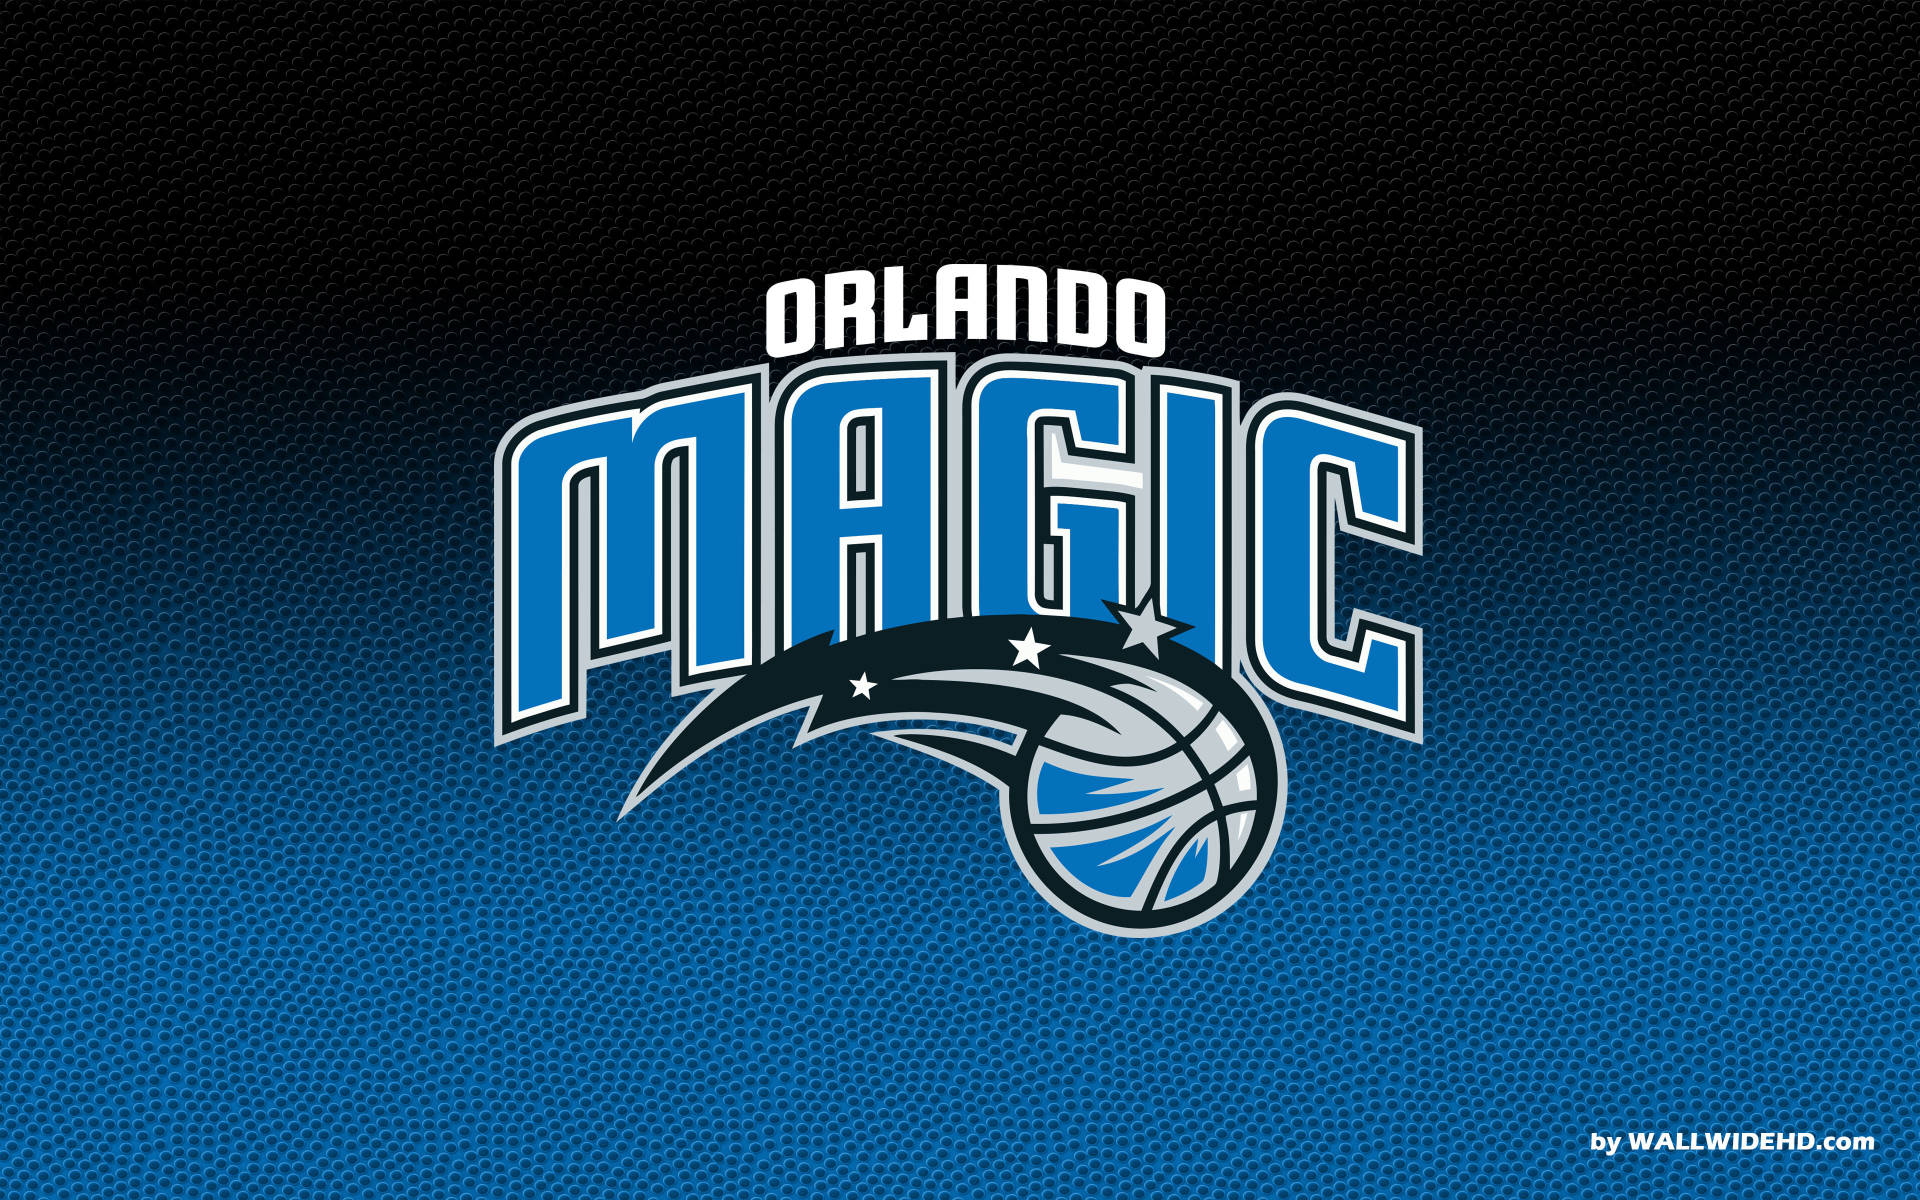 Orlando Magic In Basketball Texture Wallpaper